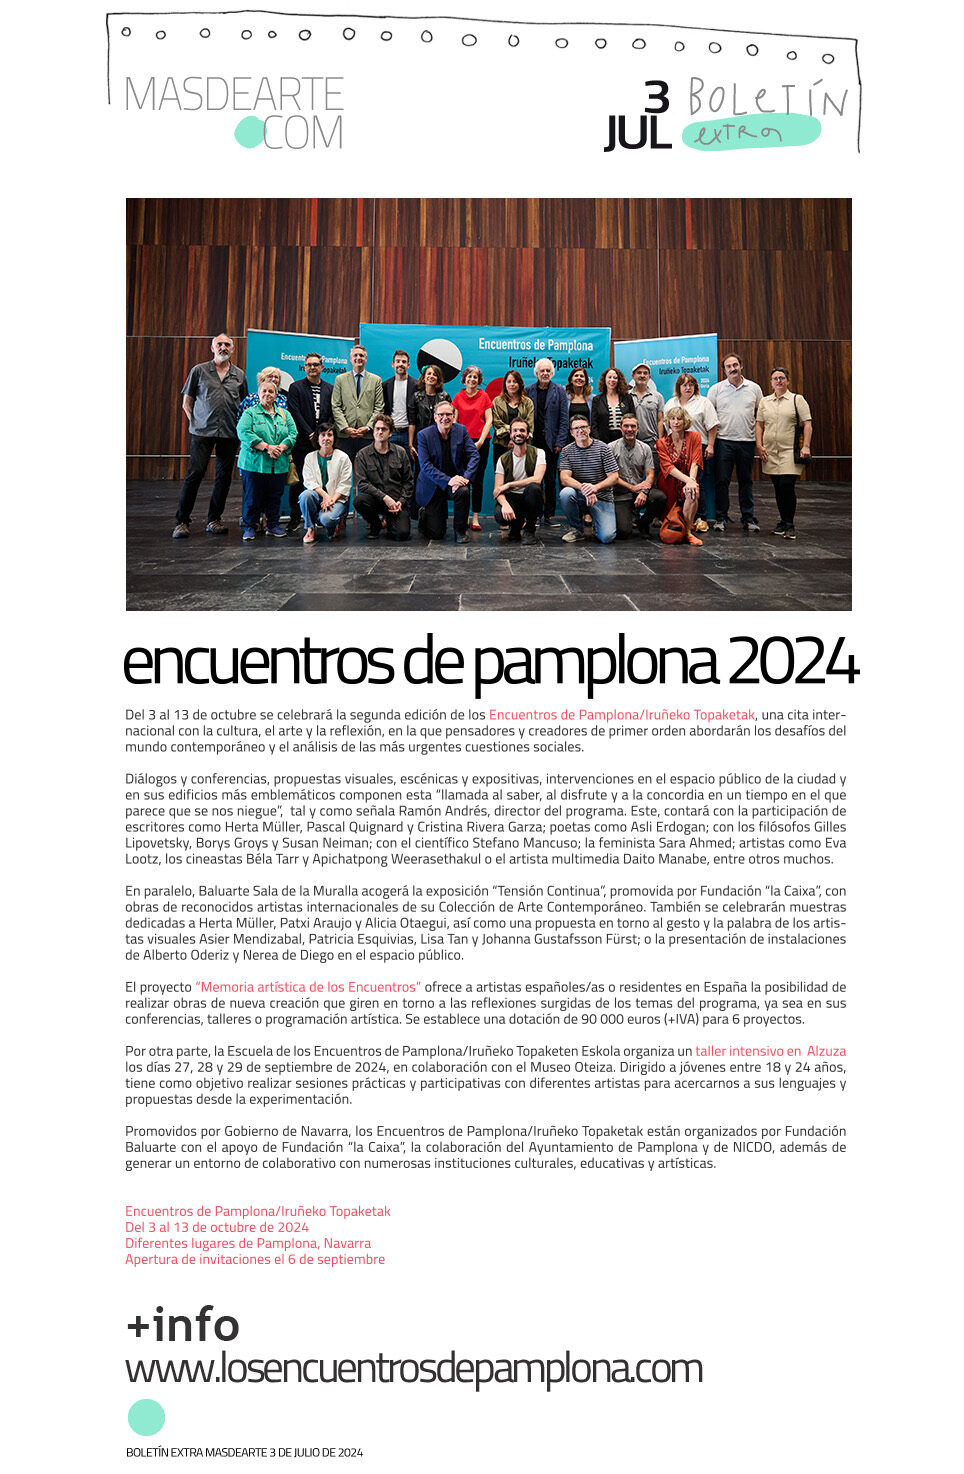 Extra masdearte: vuelven Los Encuentros
 de Pamplona. Del 3 al 13 de octubre de 2024